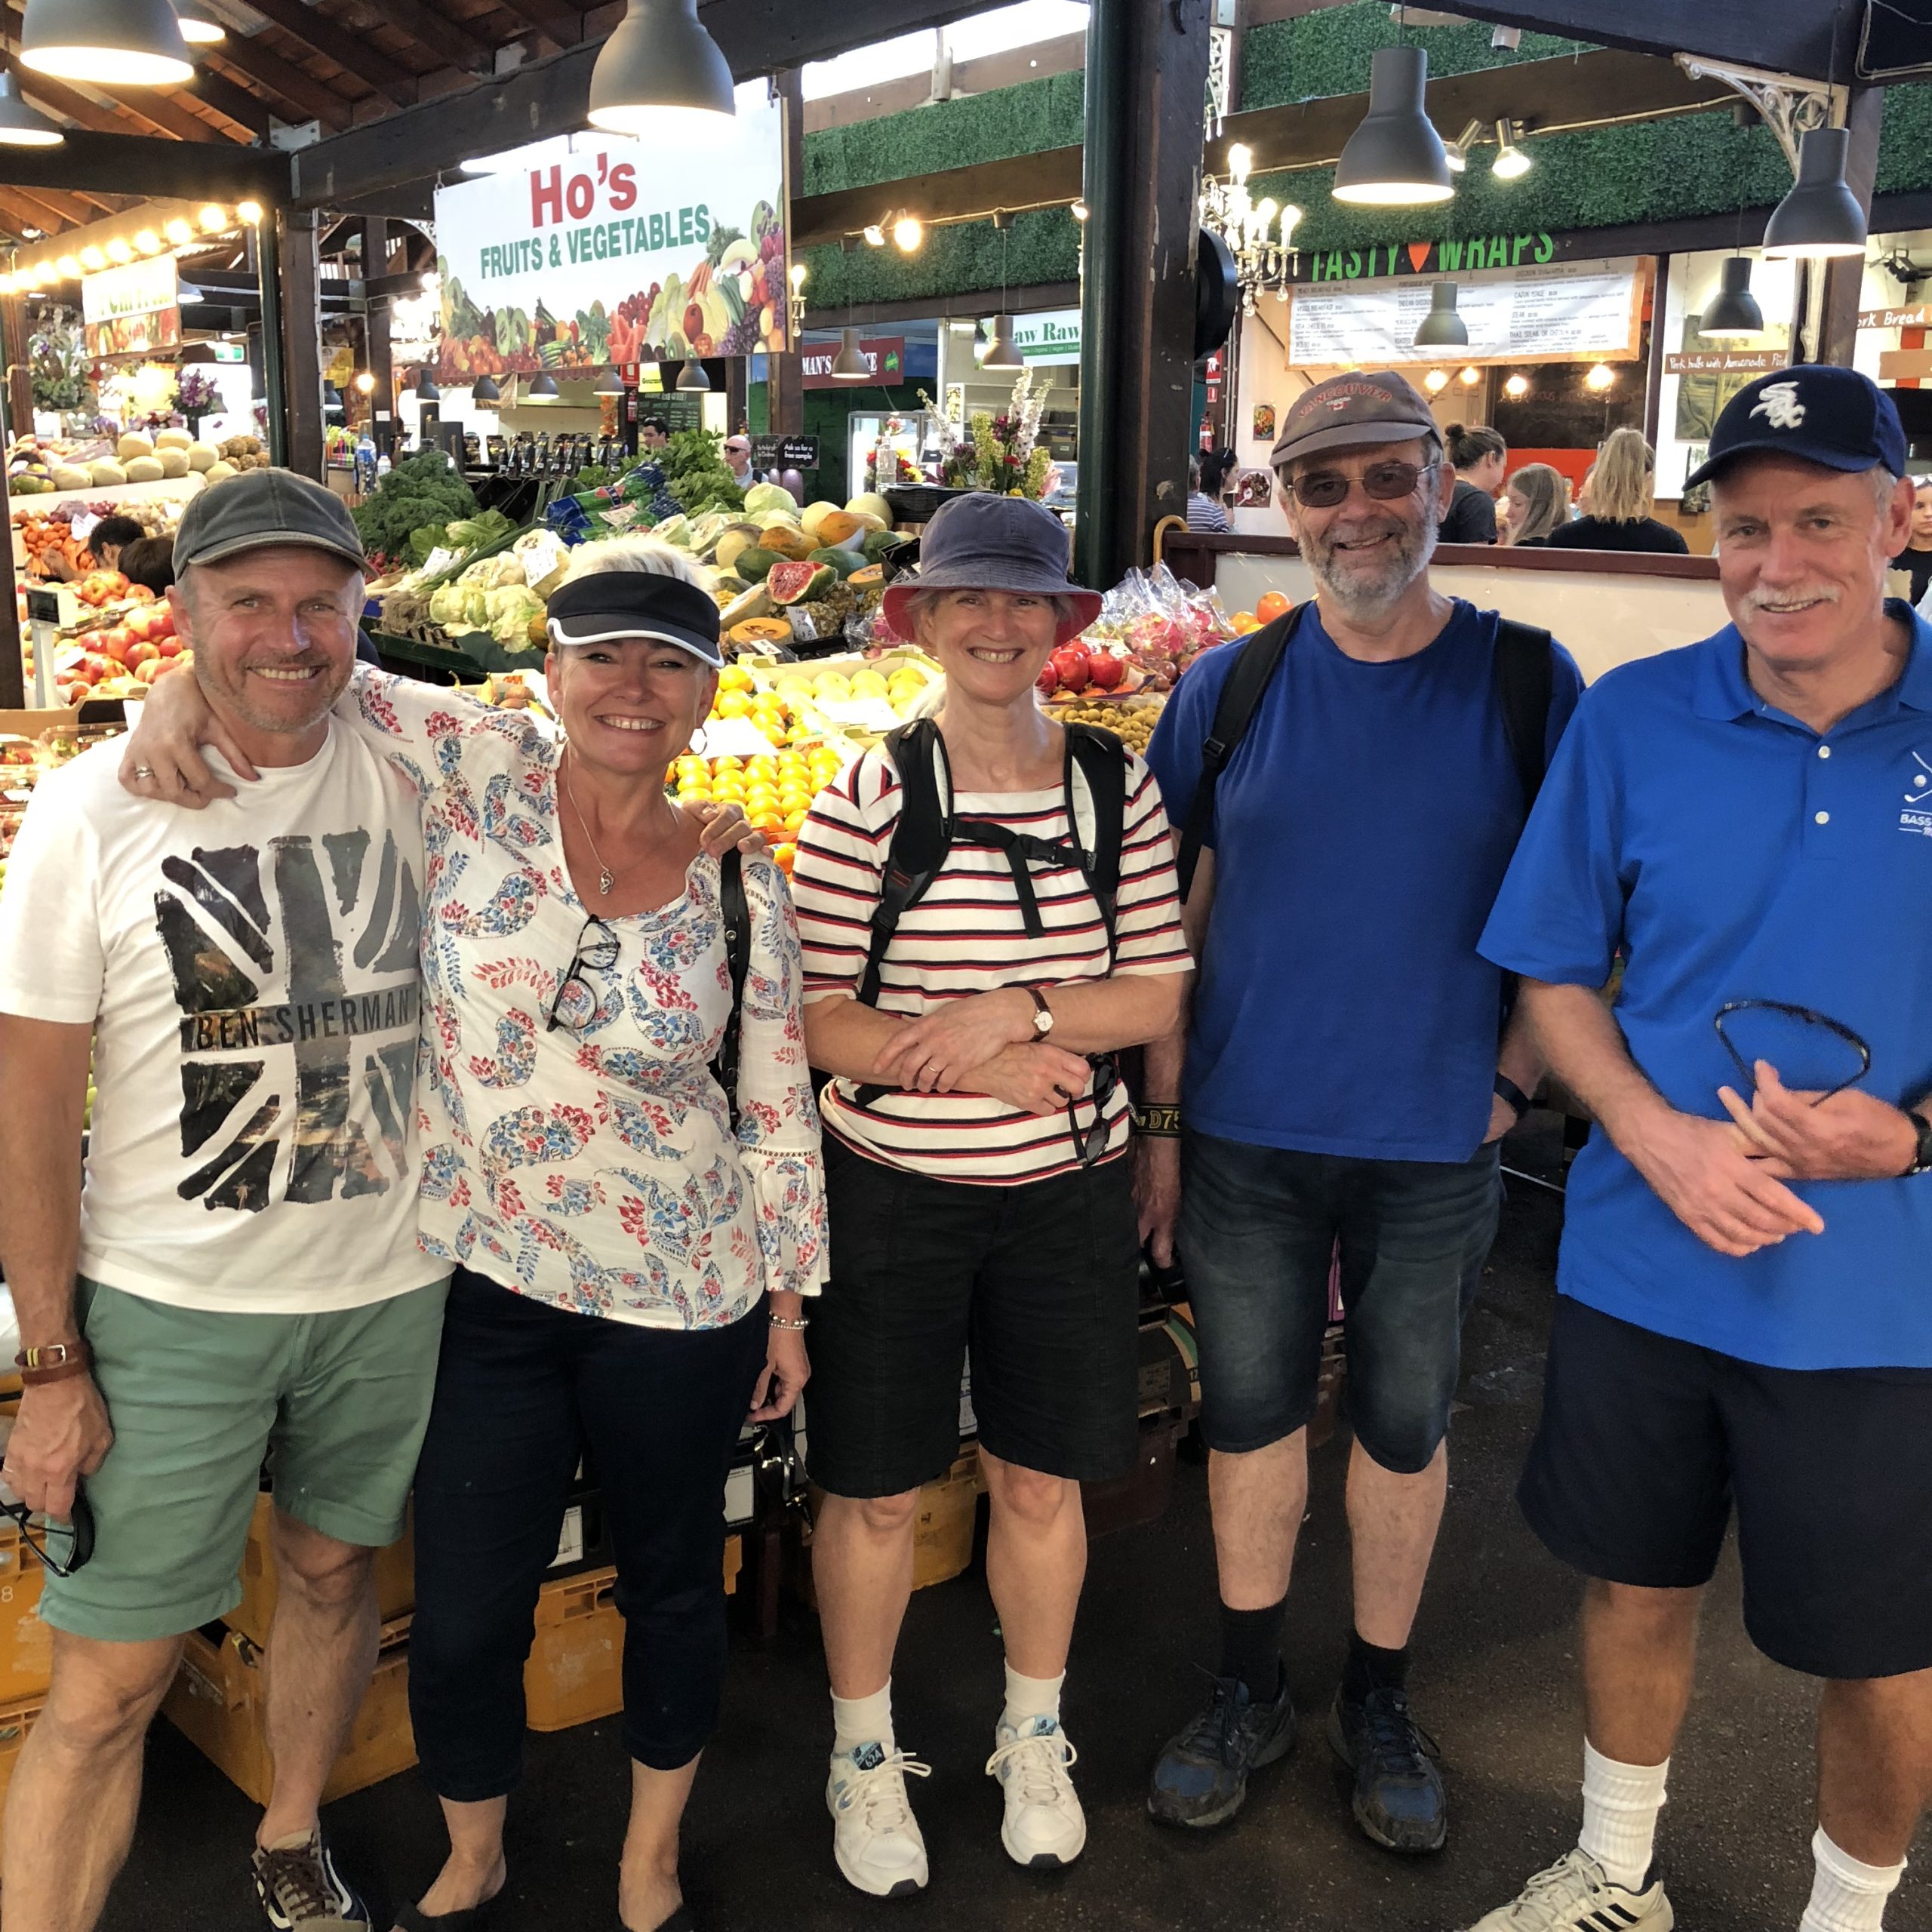 Shore Excursion – Port of Fremantle